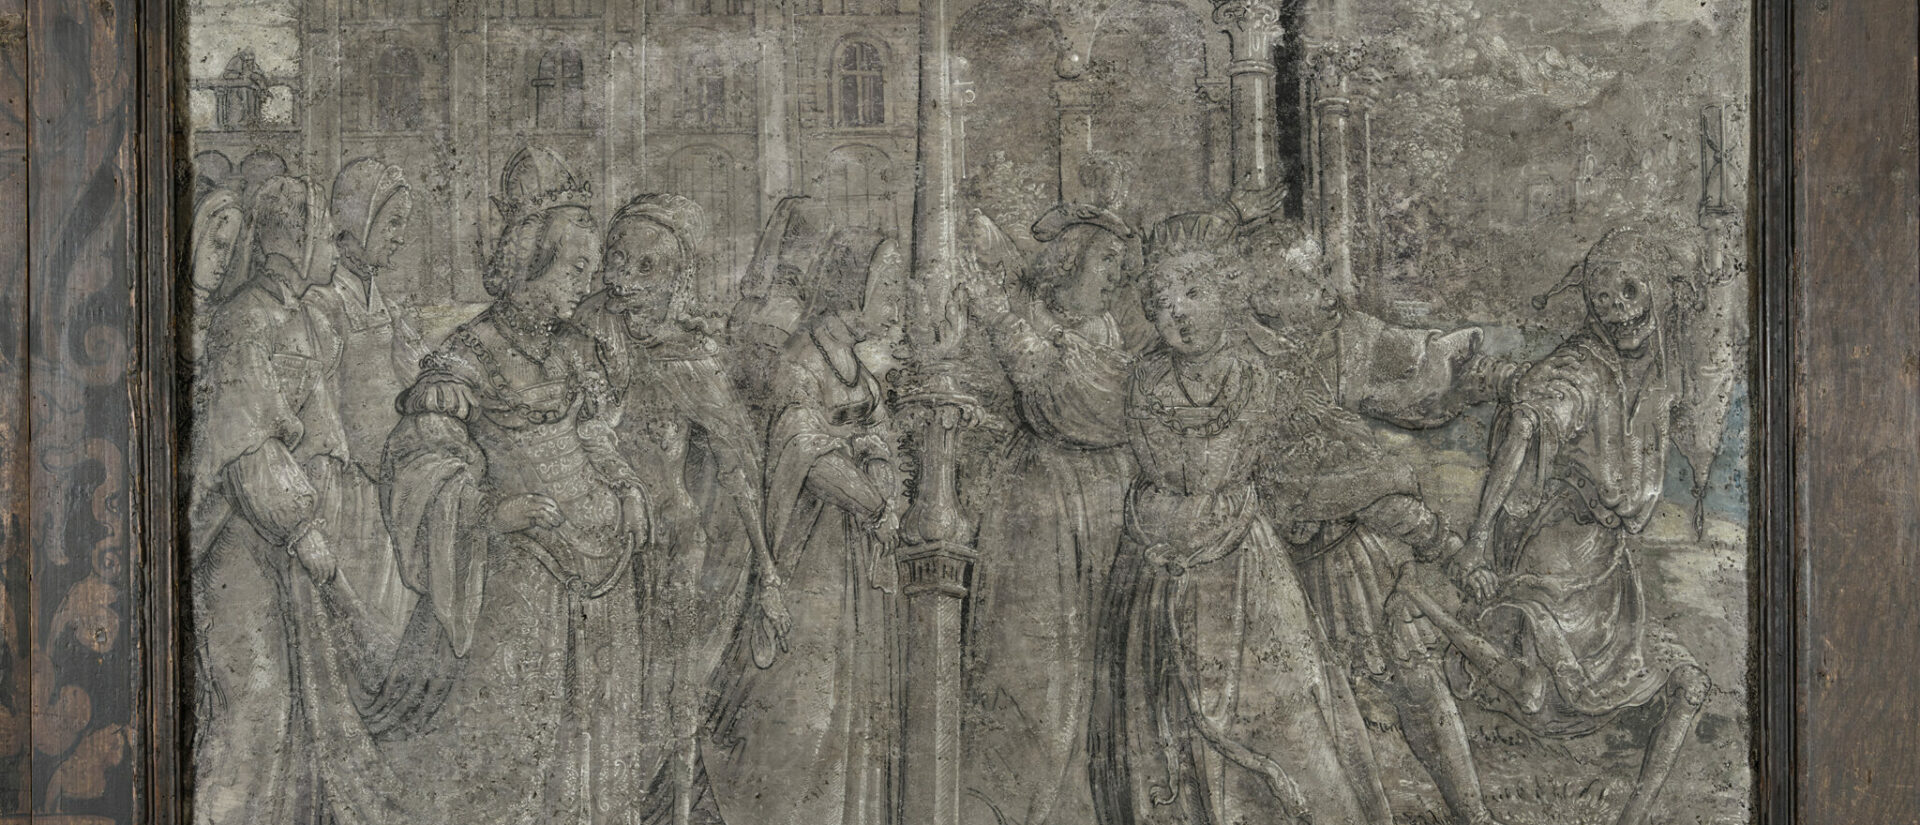 Détail d'une peinture macabre du Trésor de la cathédrale de Coire | © domschatzmuseum-chur.ch